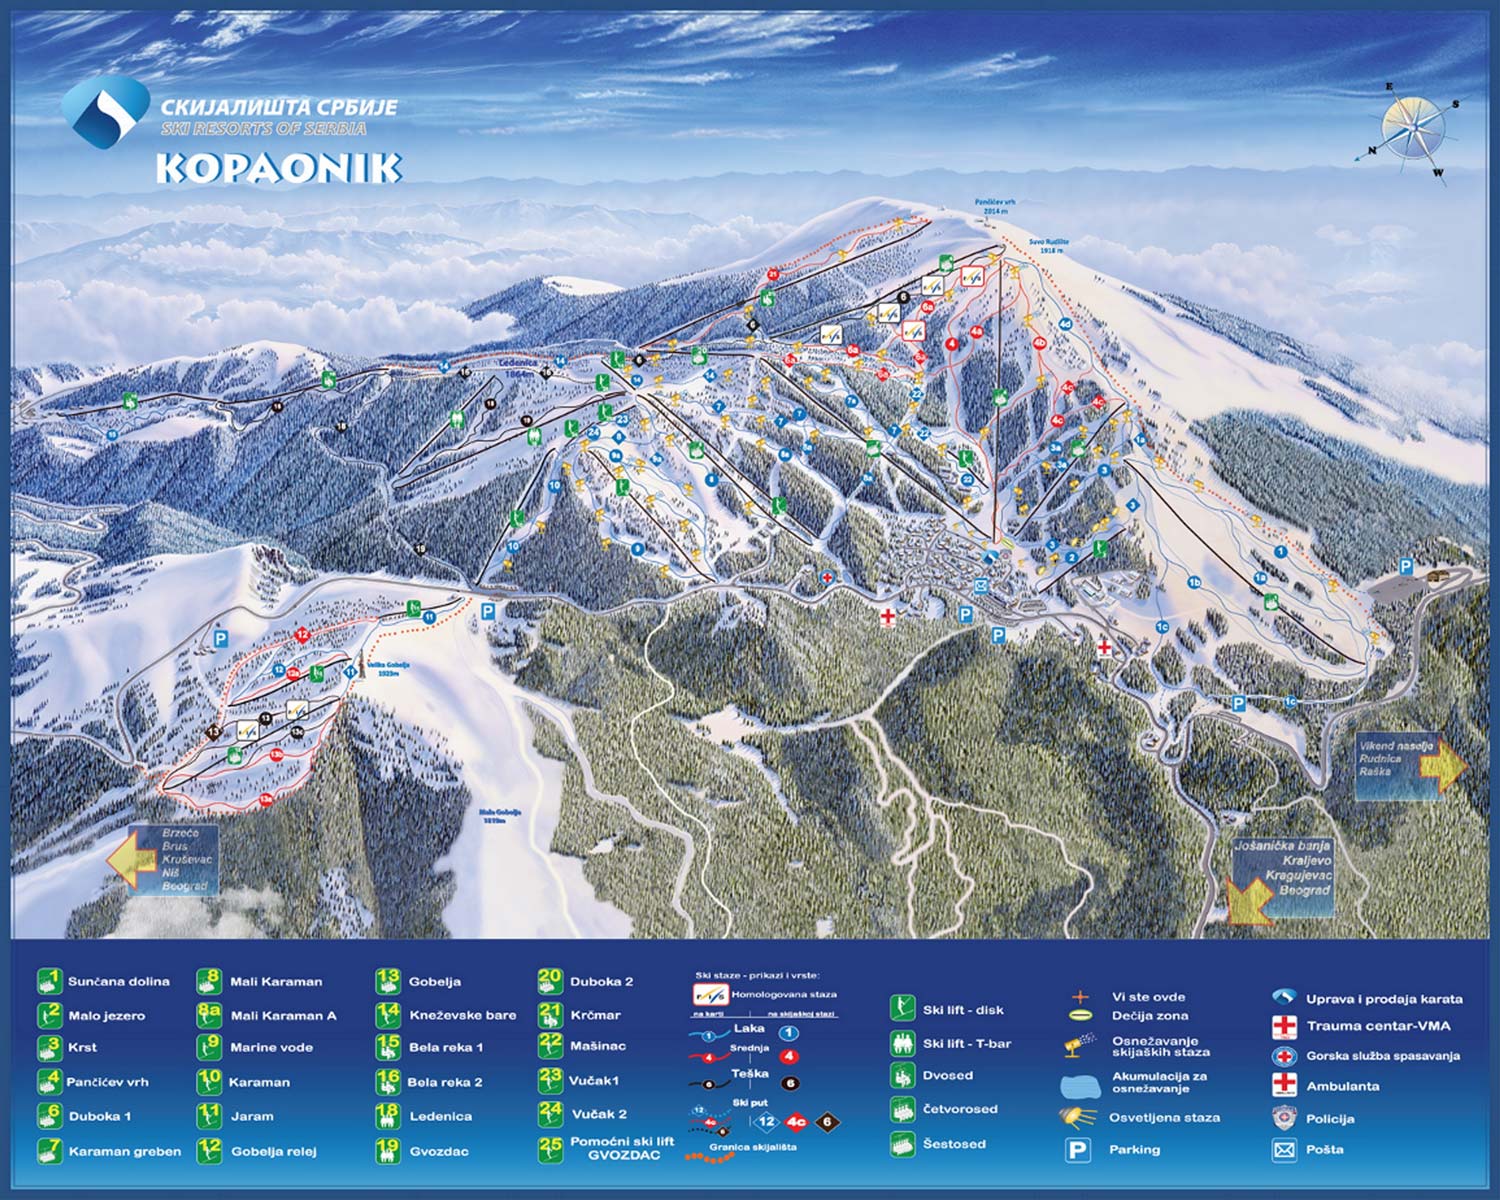 Карта горнолыжного курорта Копаоник, Сербия. Туры в Сербию в Туле и Тульской области